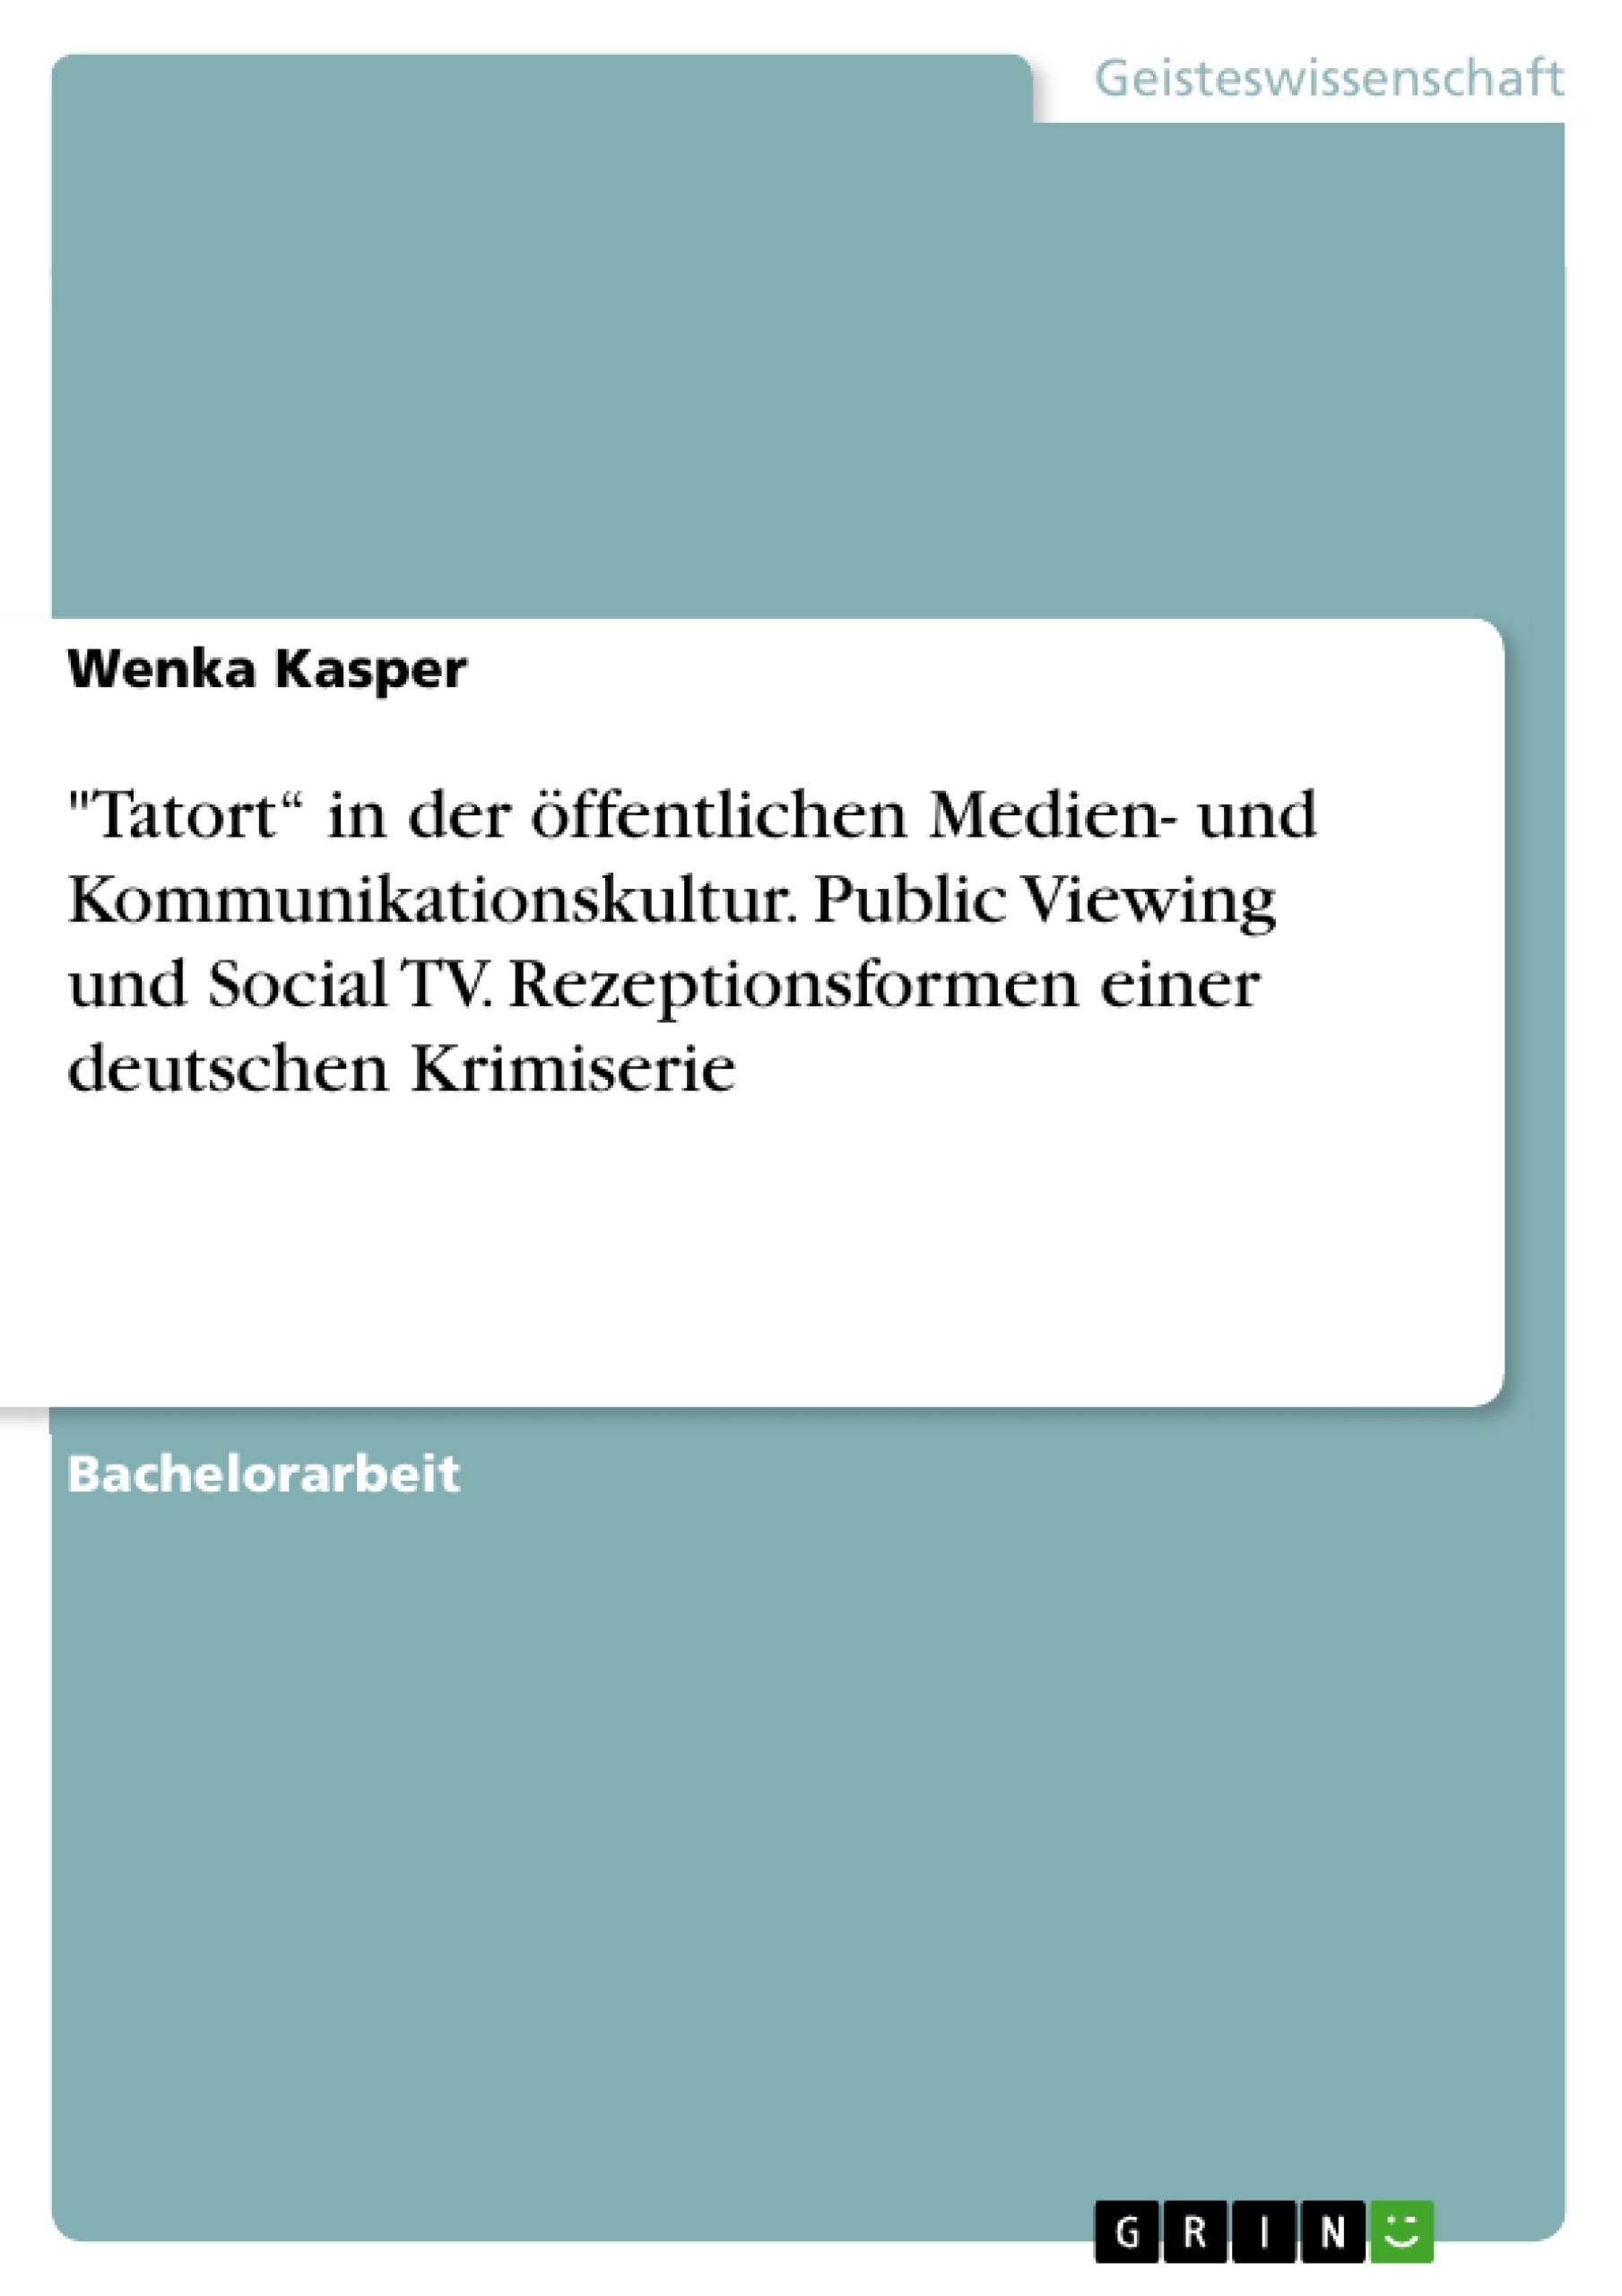 Título: "Tatort“ in der öffentlichen Medien- und Kommunikationskultur. Public Viewing und Social TV. Rezeptionsformen einer deutschen Krimiserie